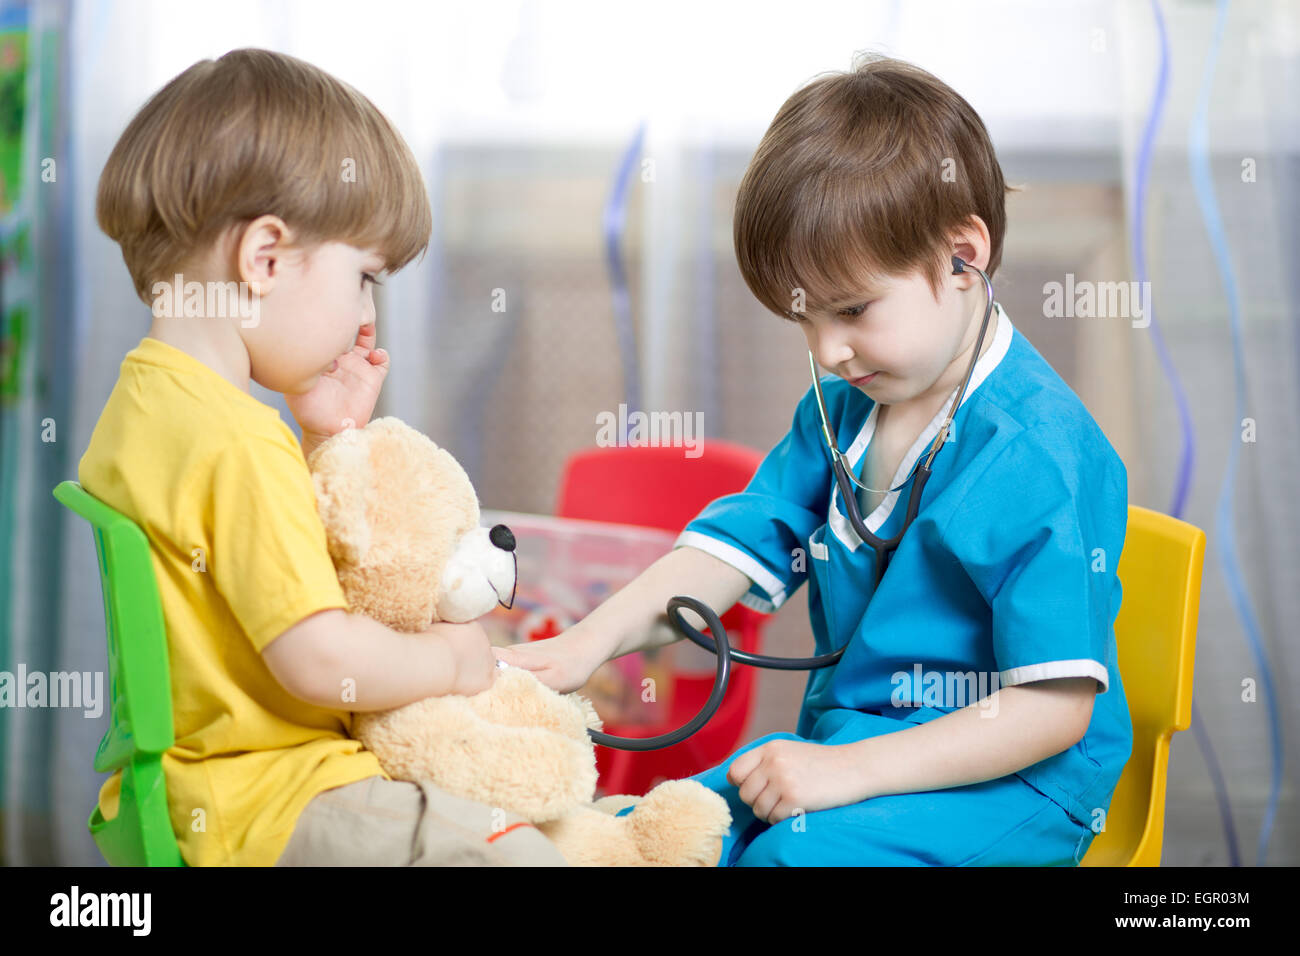 Los niños juegan con juguetes de felpa médico Foto de stock